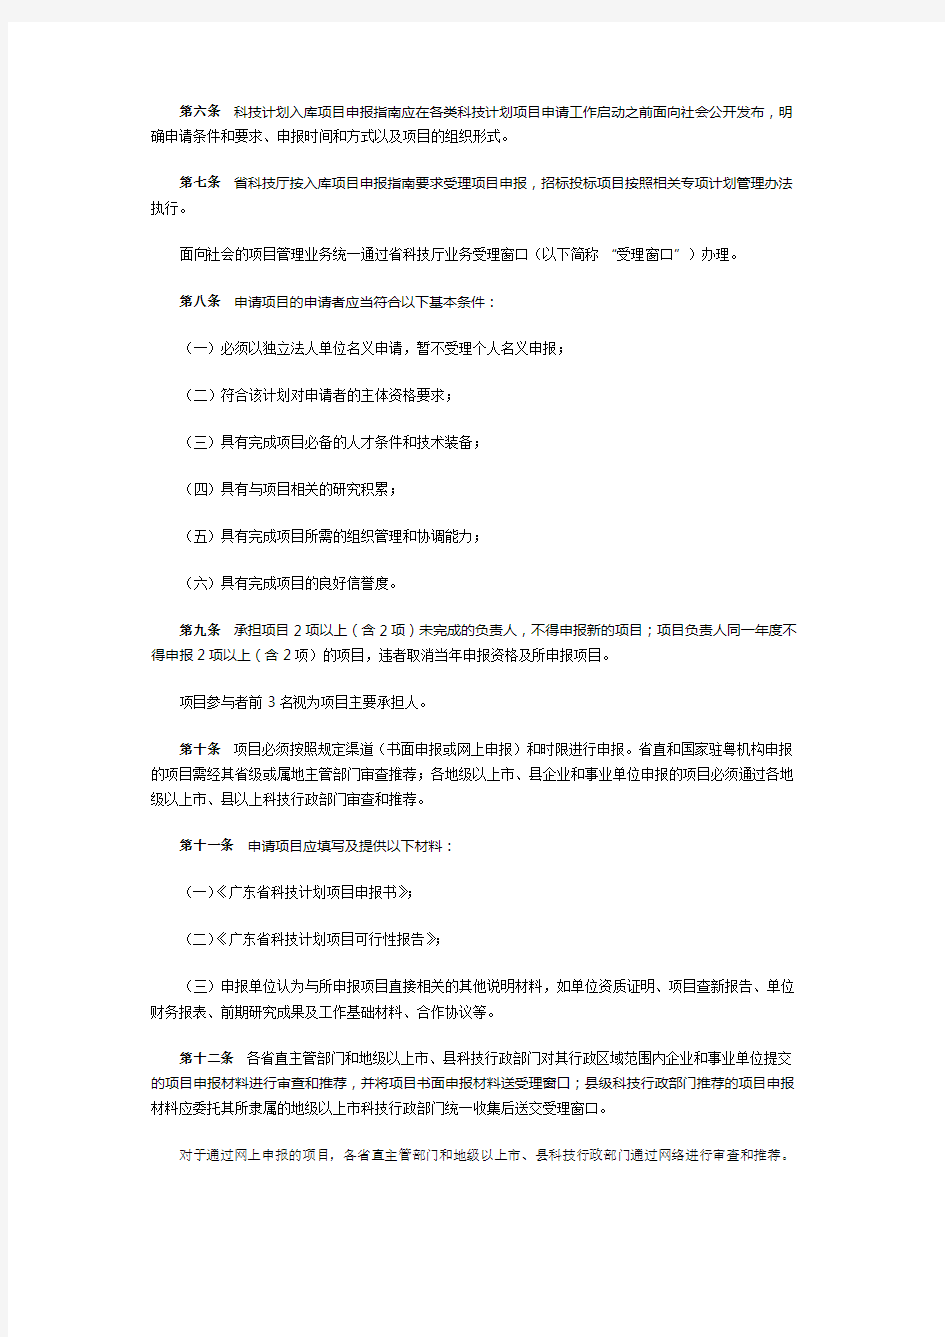 广东省科学技术厅关于省级科技计划项目管理的暂行办法